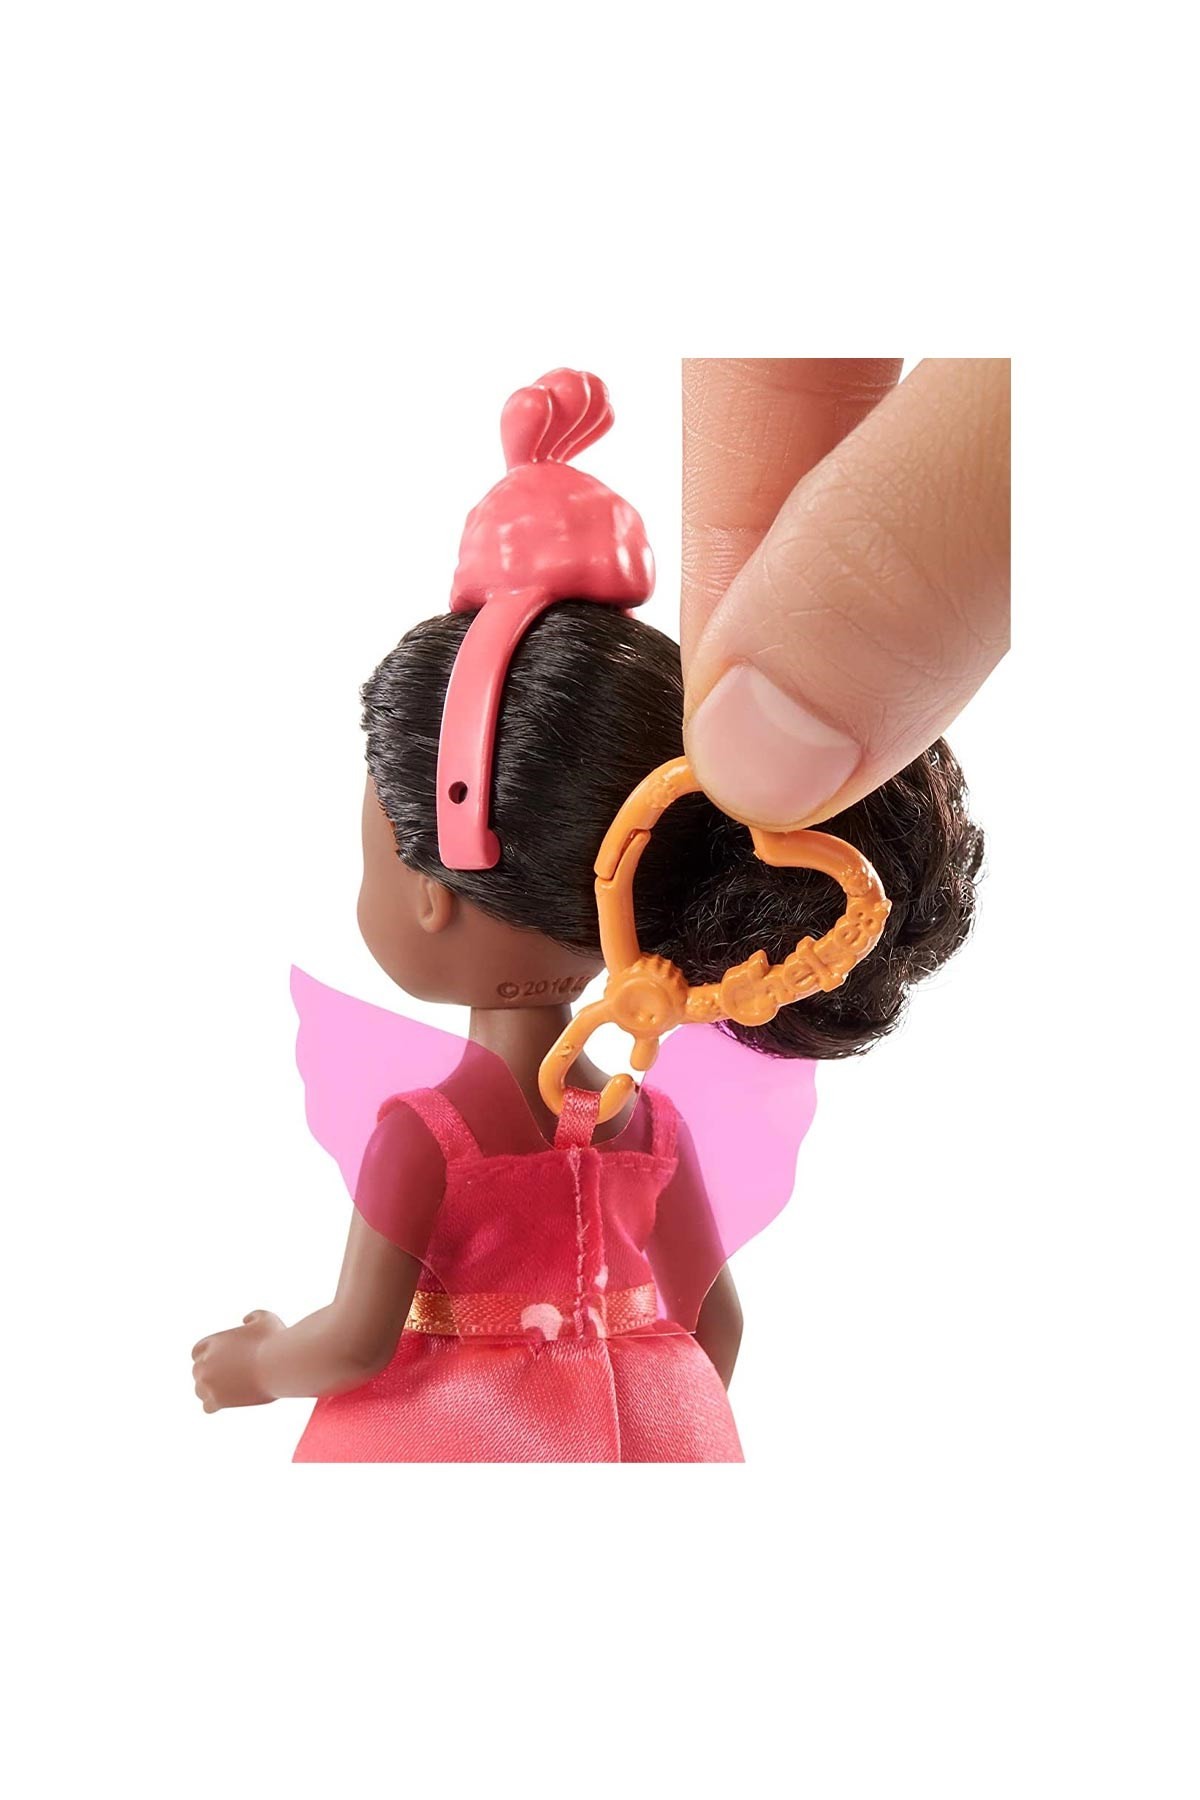 Barbie Kostümlü Chelsea ve Hayvacığı Oyun Setleri Flamingo Temalı